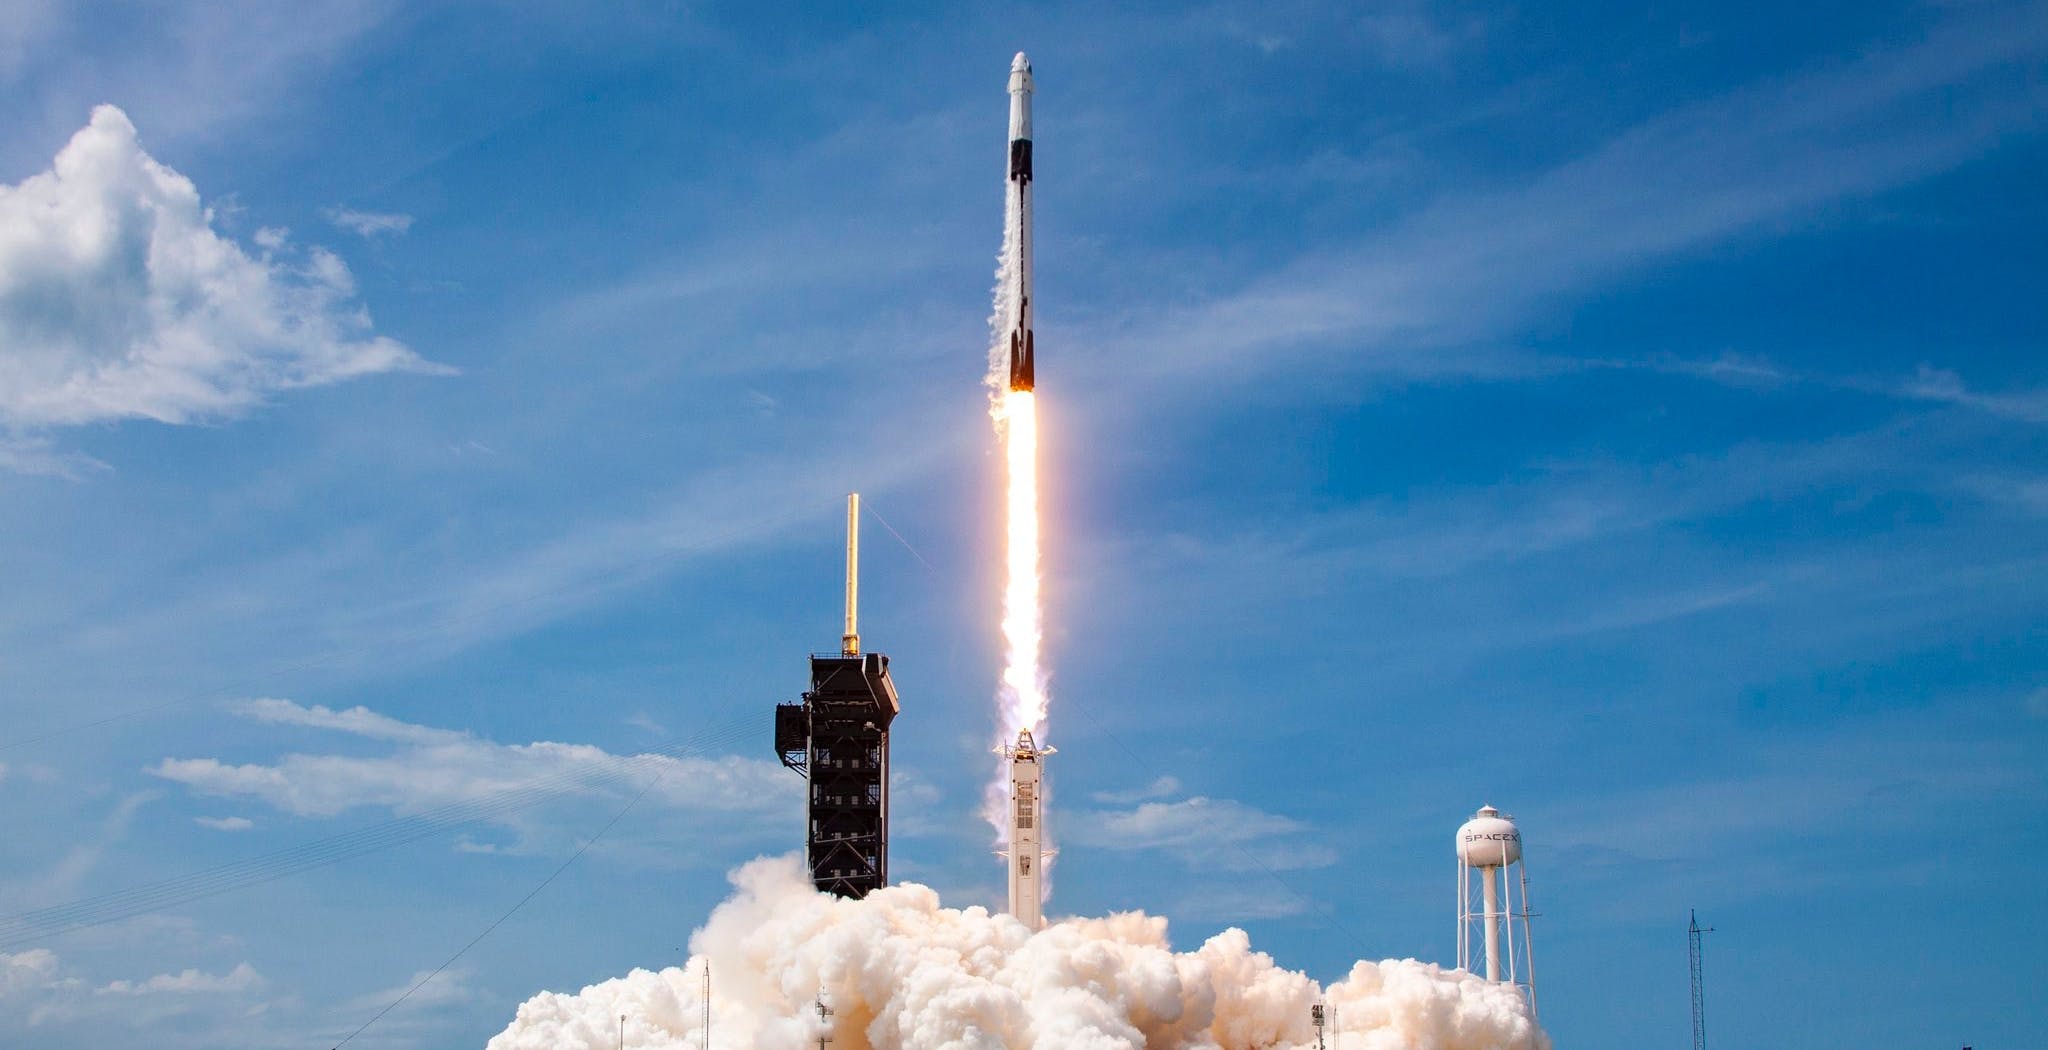 Scopri di più sull'articolo SpaceX entra nella storia: è la prima compagnia privata a portare l’uomo nello spazio